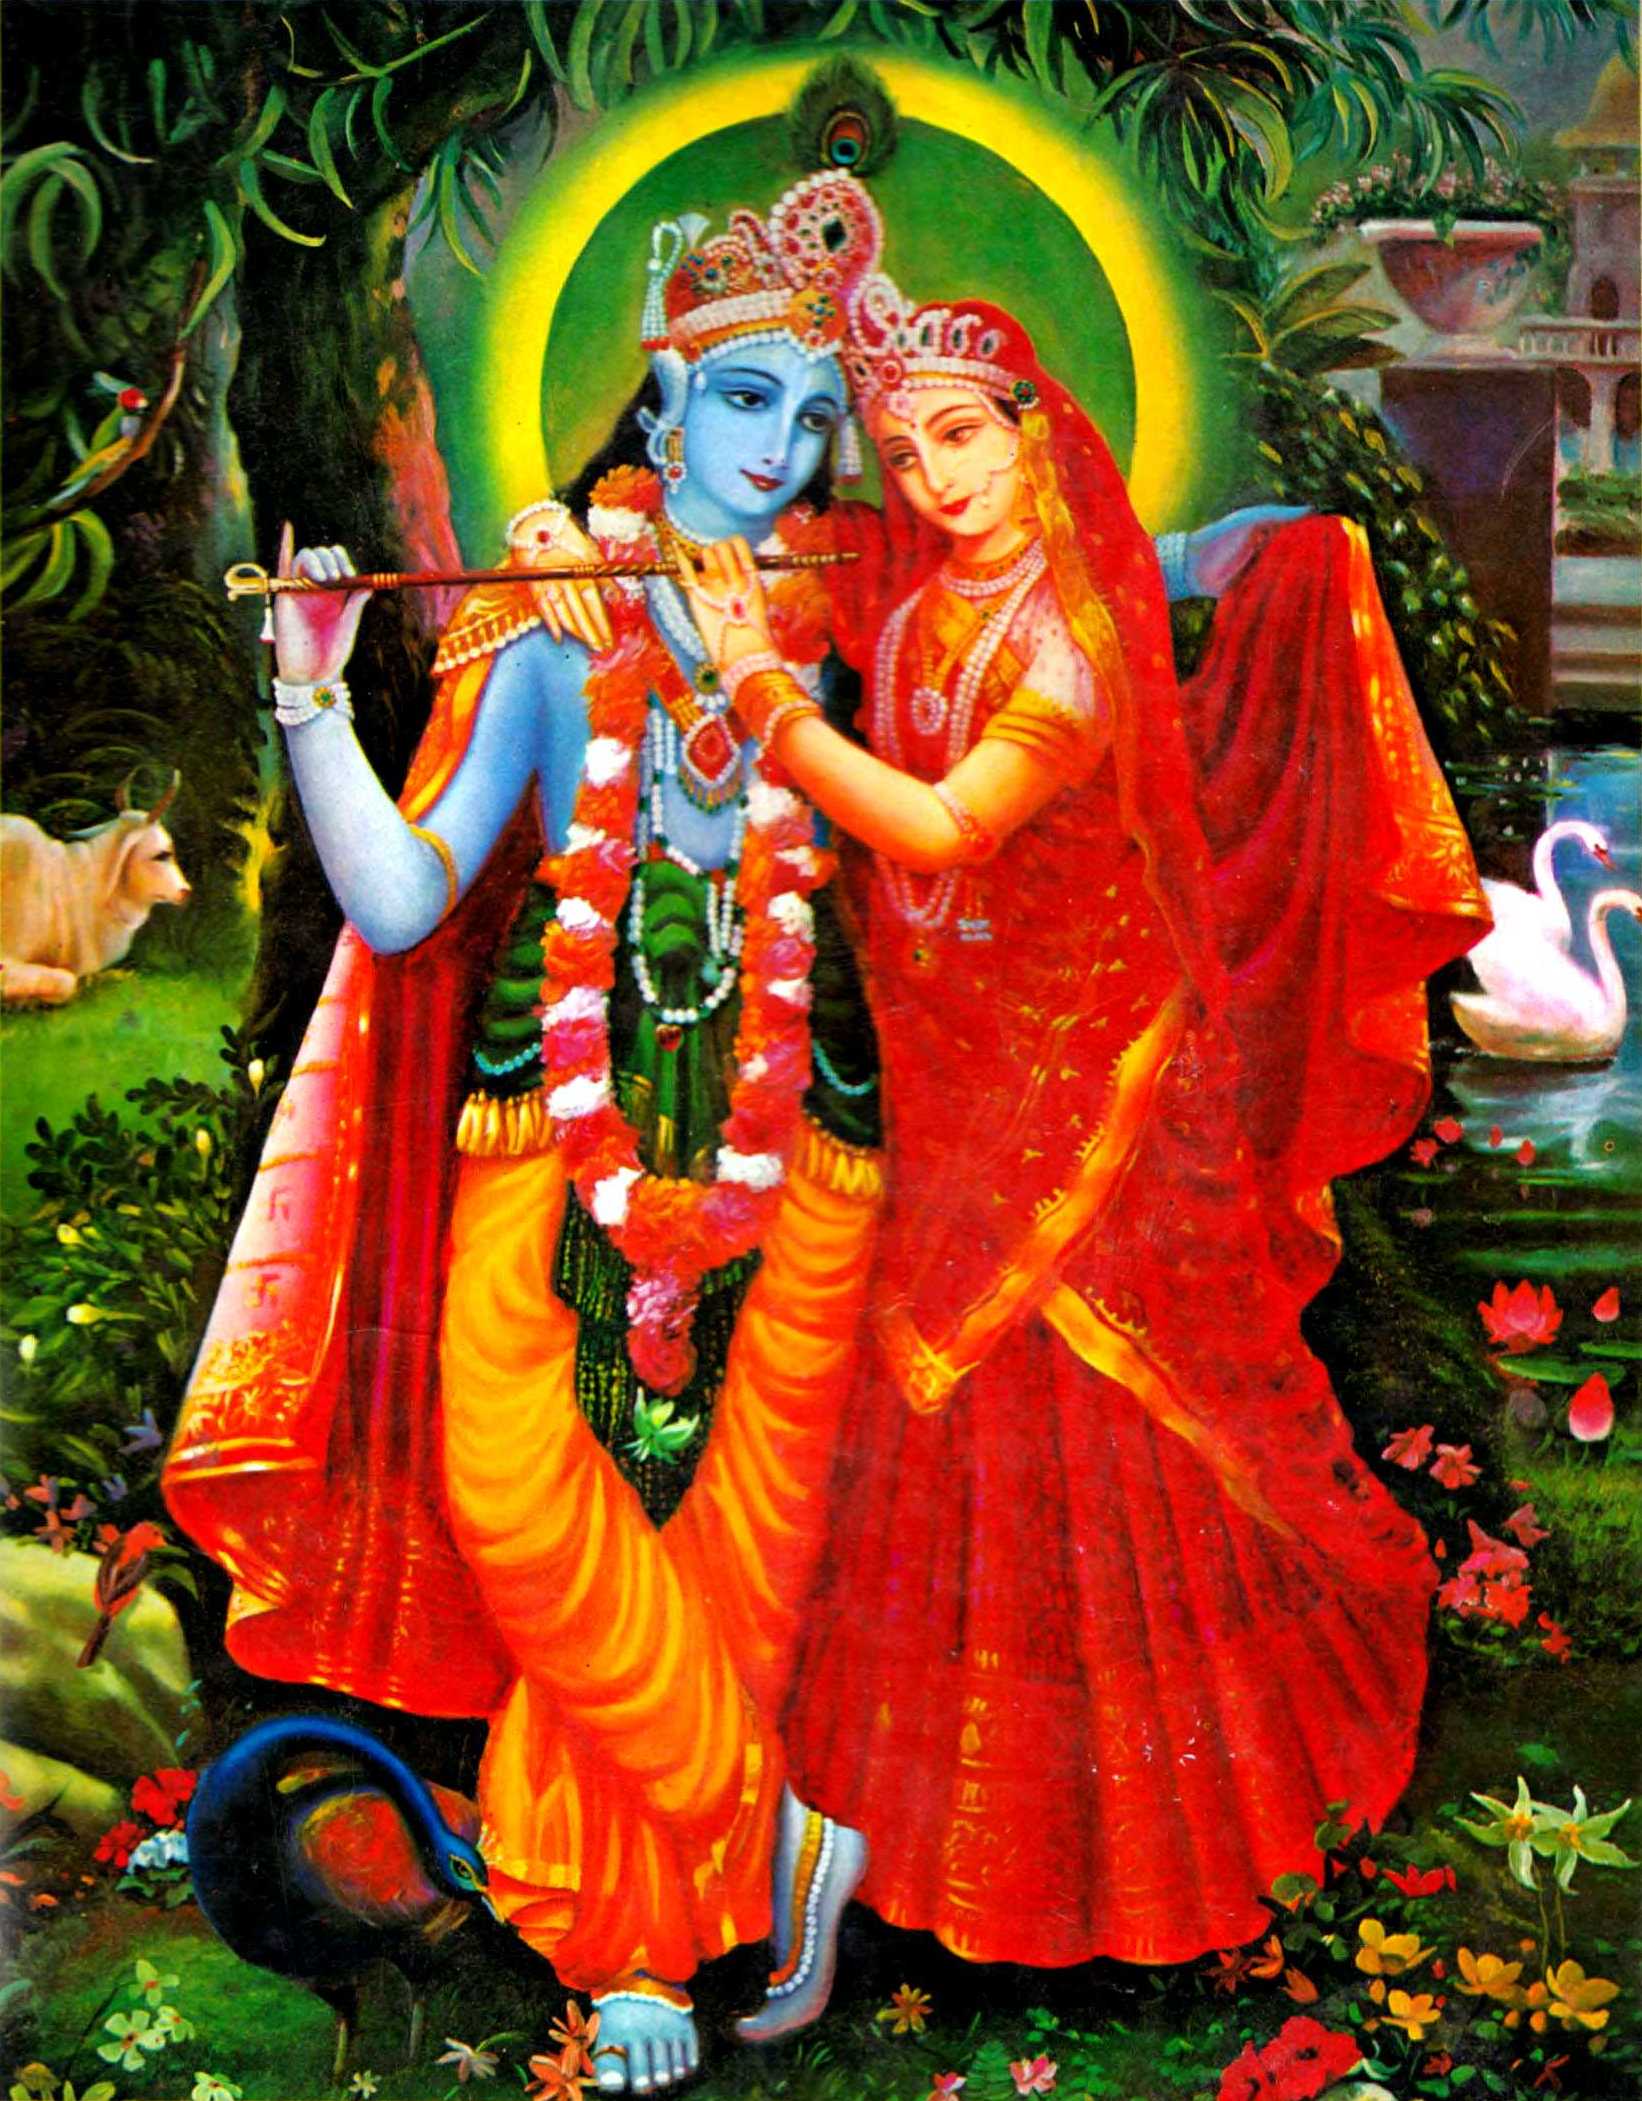 Clicca qui per sapere chi e' Sri Krishna